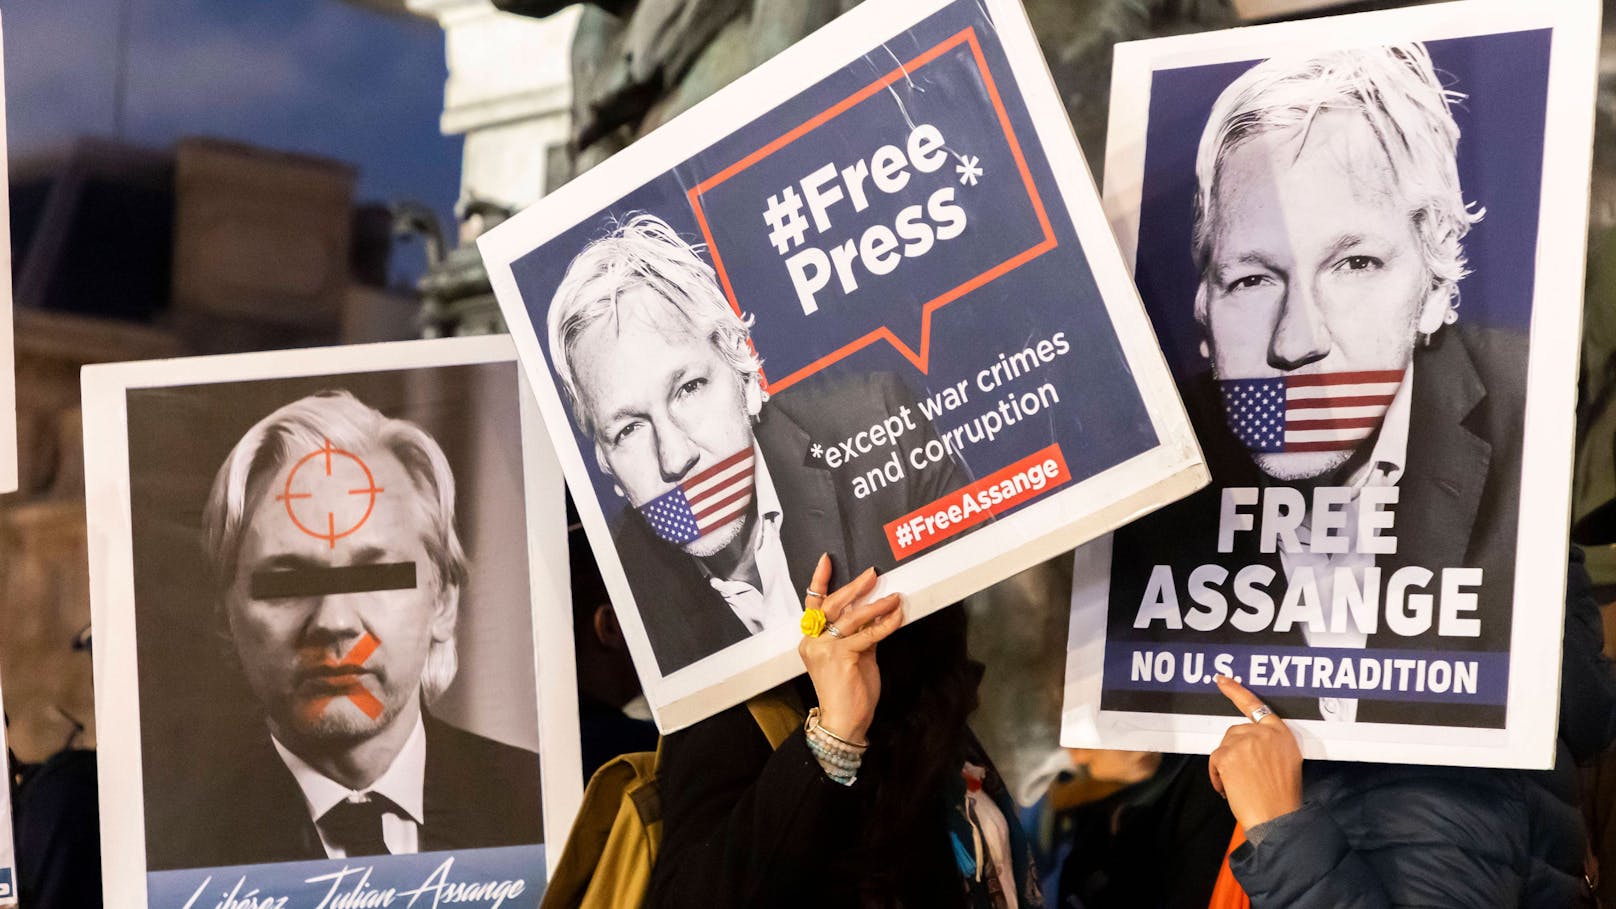 Verzichtet USA jetzt komplett auf Assange-Auslieferung?